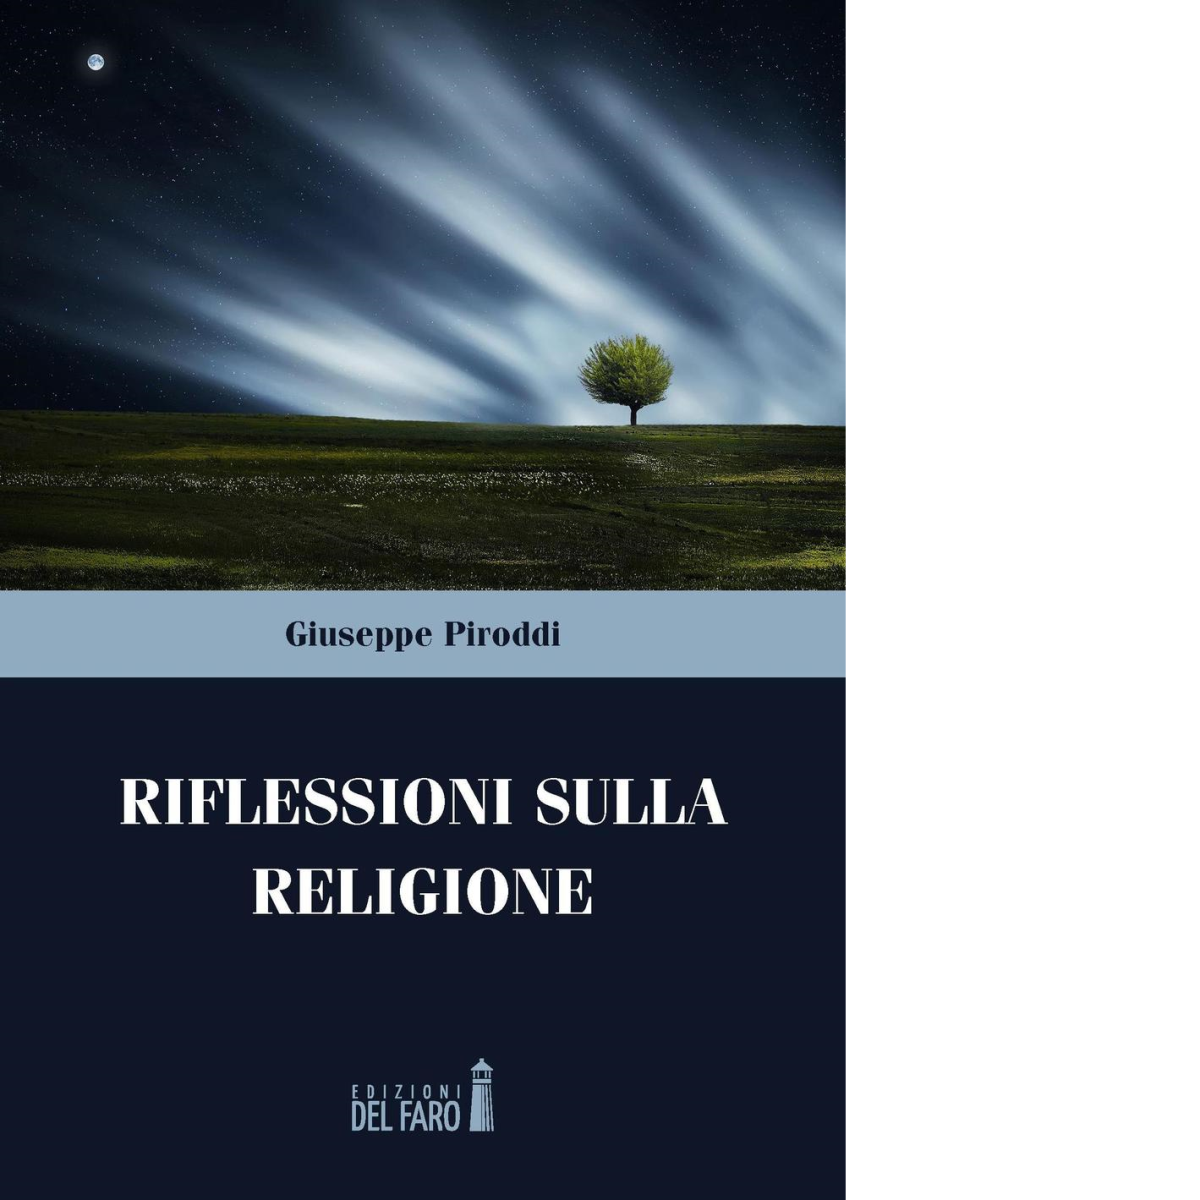 Riflessioni sulla religione di Giuseppe Piroddi - Edizioni Del Faro, 2016